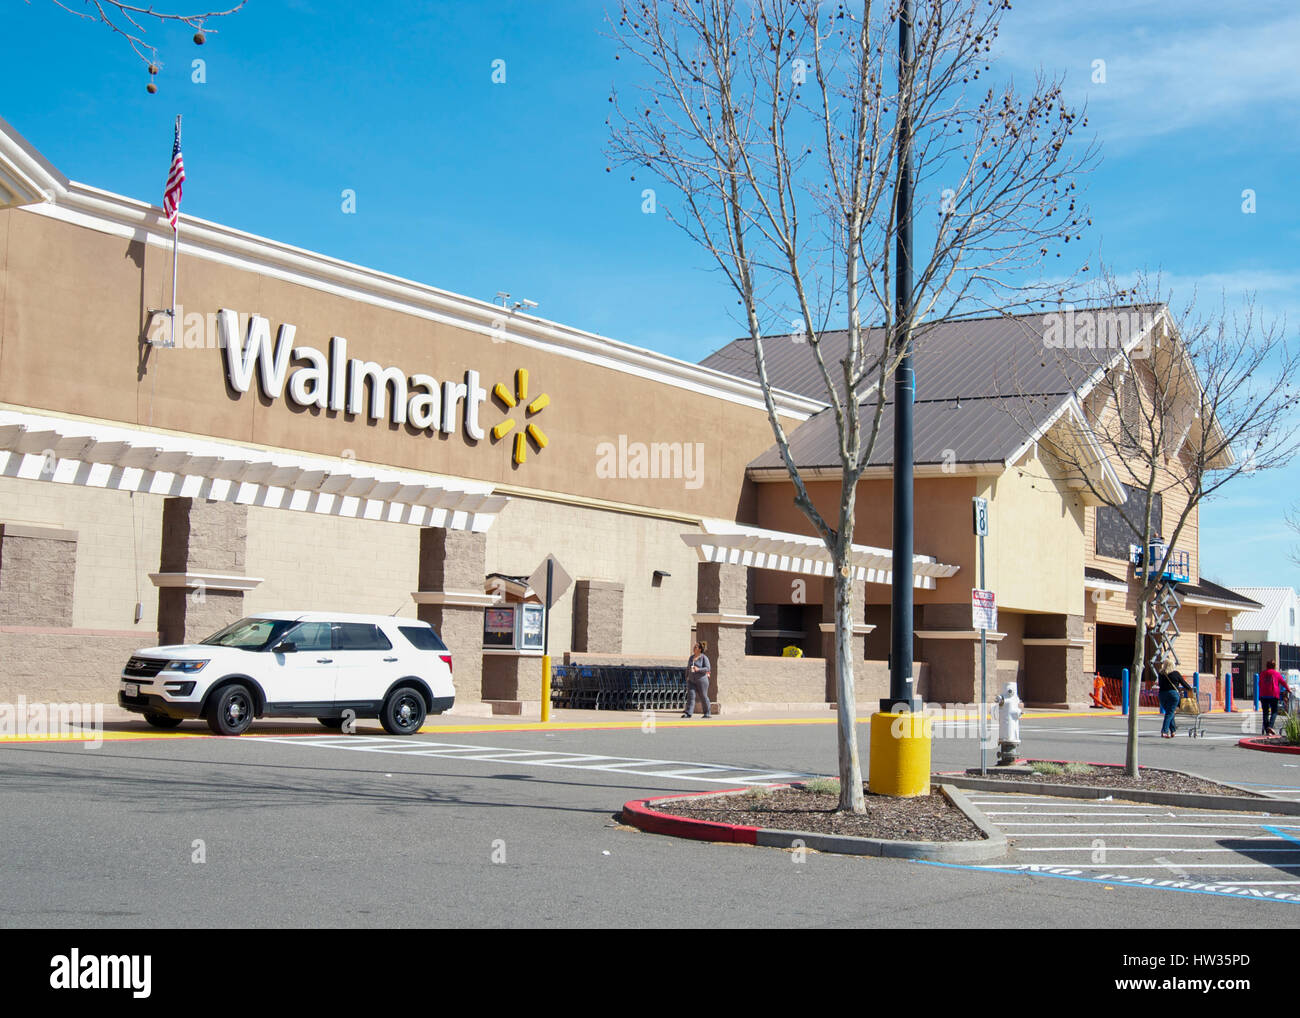 Wallmart negozio di fronte Dixon, CALIFORNIA, STATI UNITI D'AMERICA, in un cielo privo di nuvole giorno e custommers camminando per circa Foto Stock